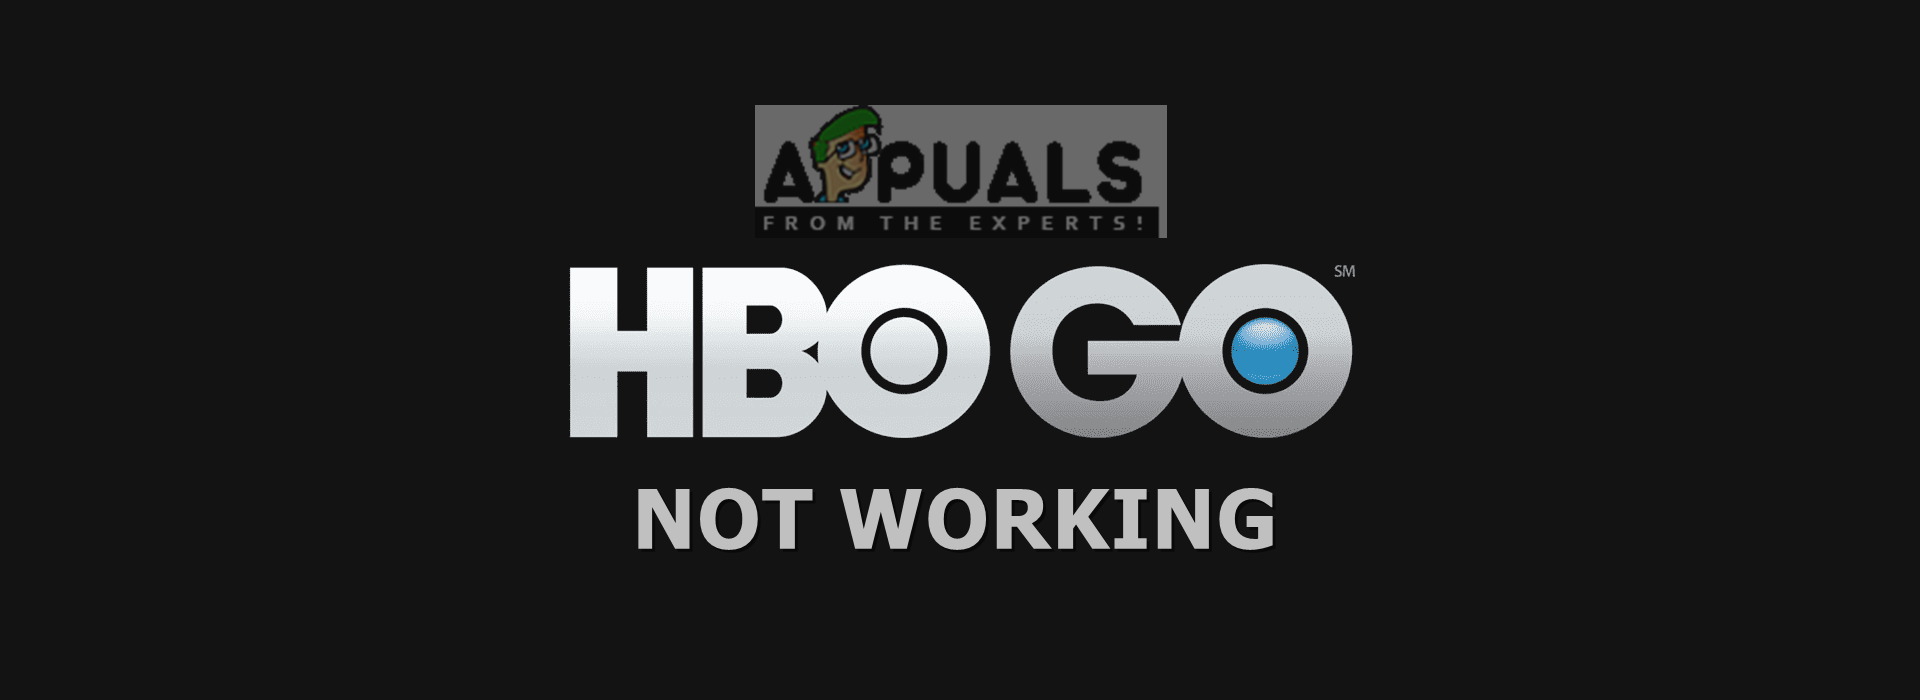 சரி: HBO GO வேலை செய்யவில்லை